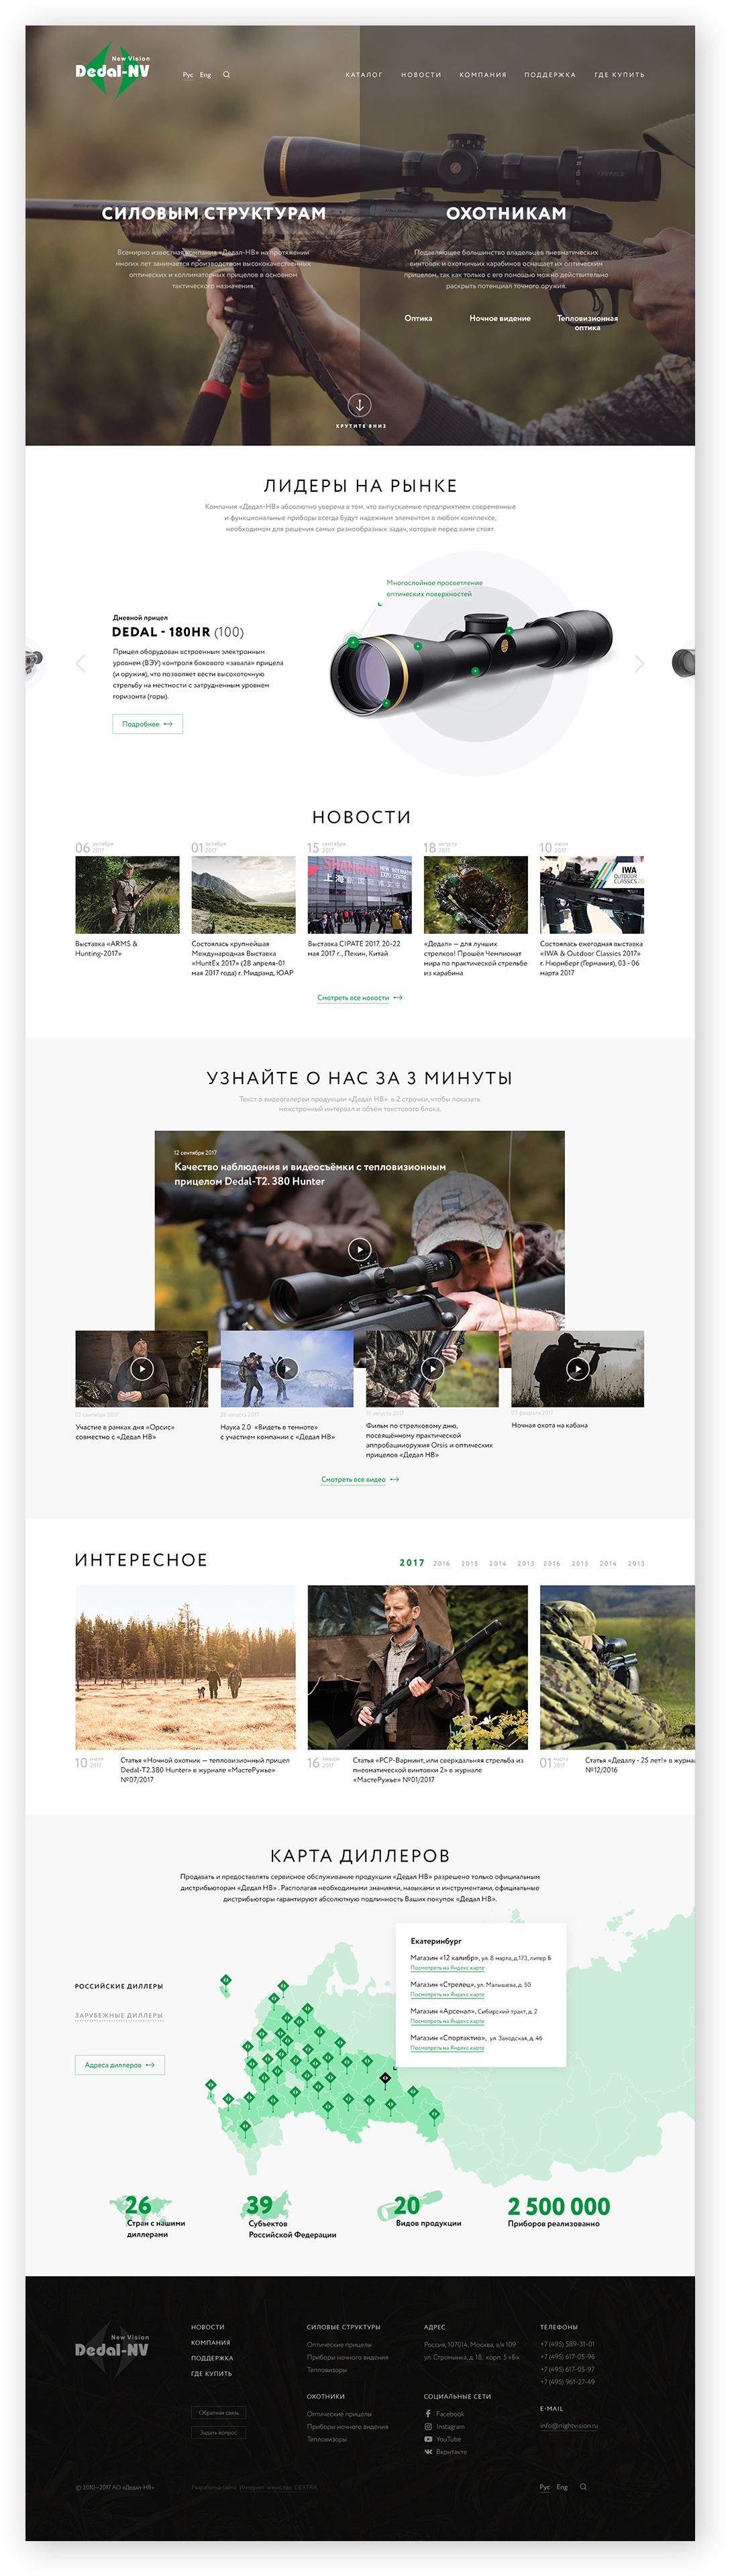 Сайт оружейной оптики «Дедал-НВ» - вариант дизайна в другом стиле